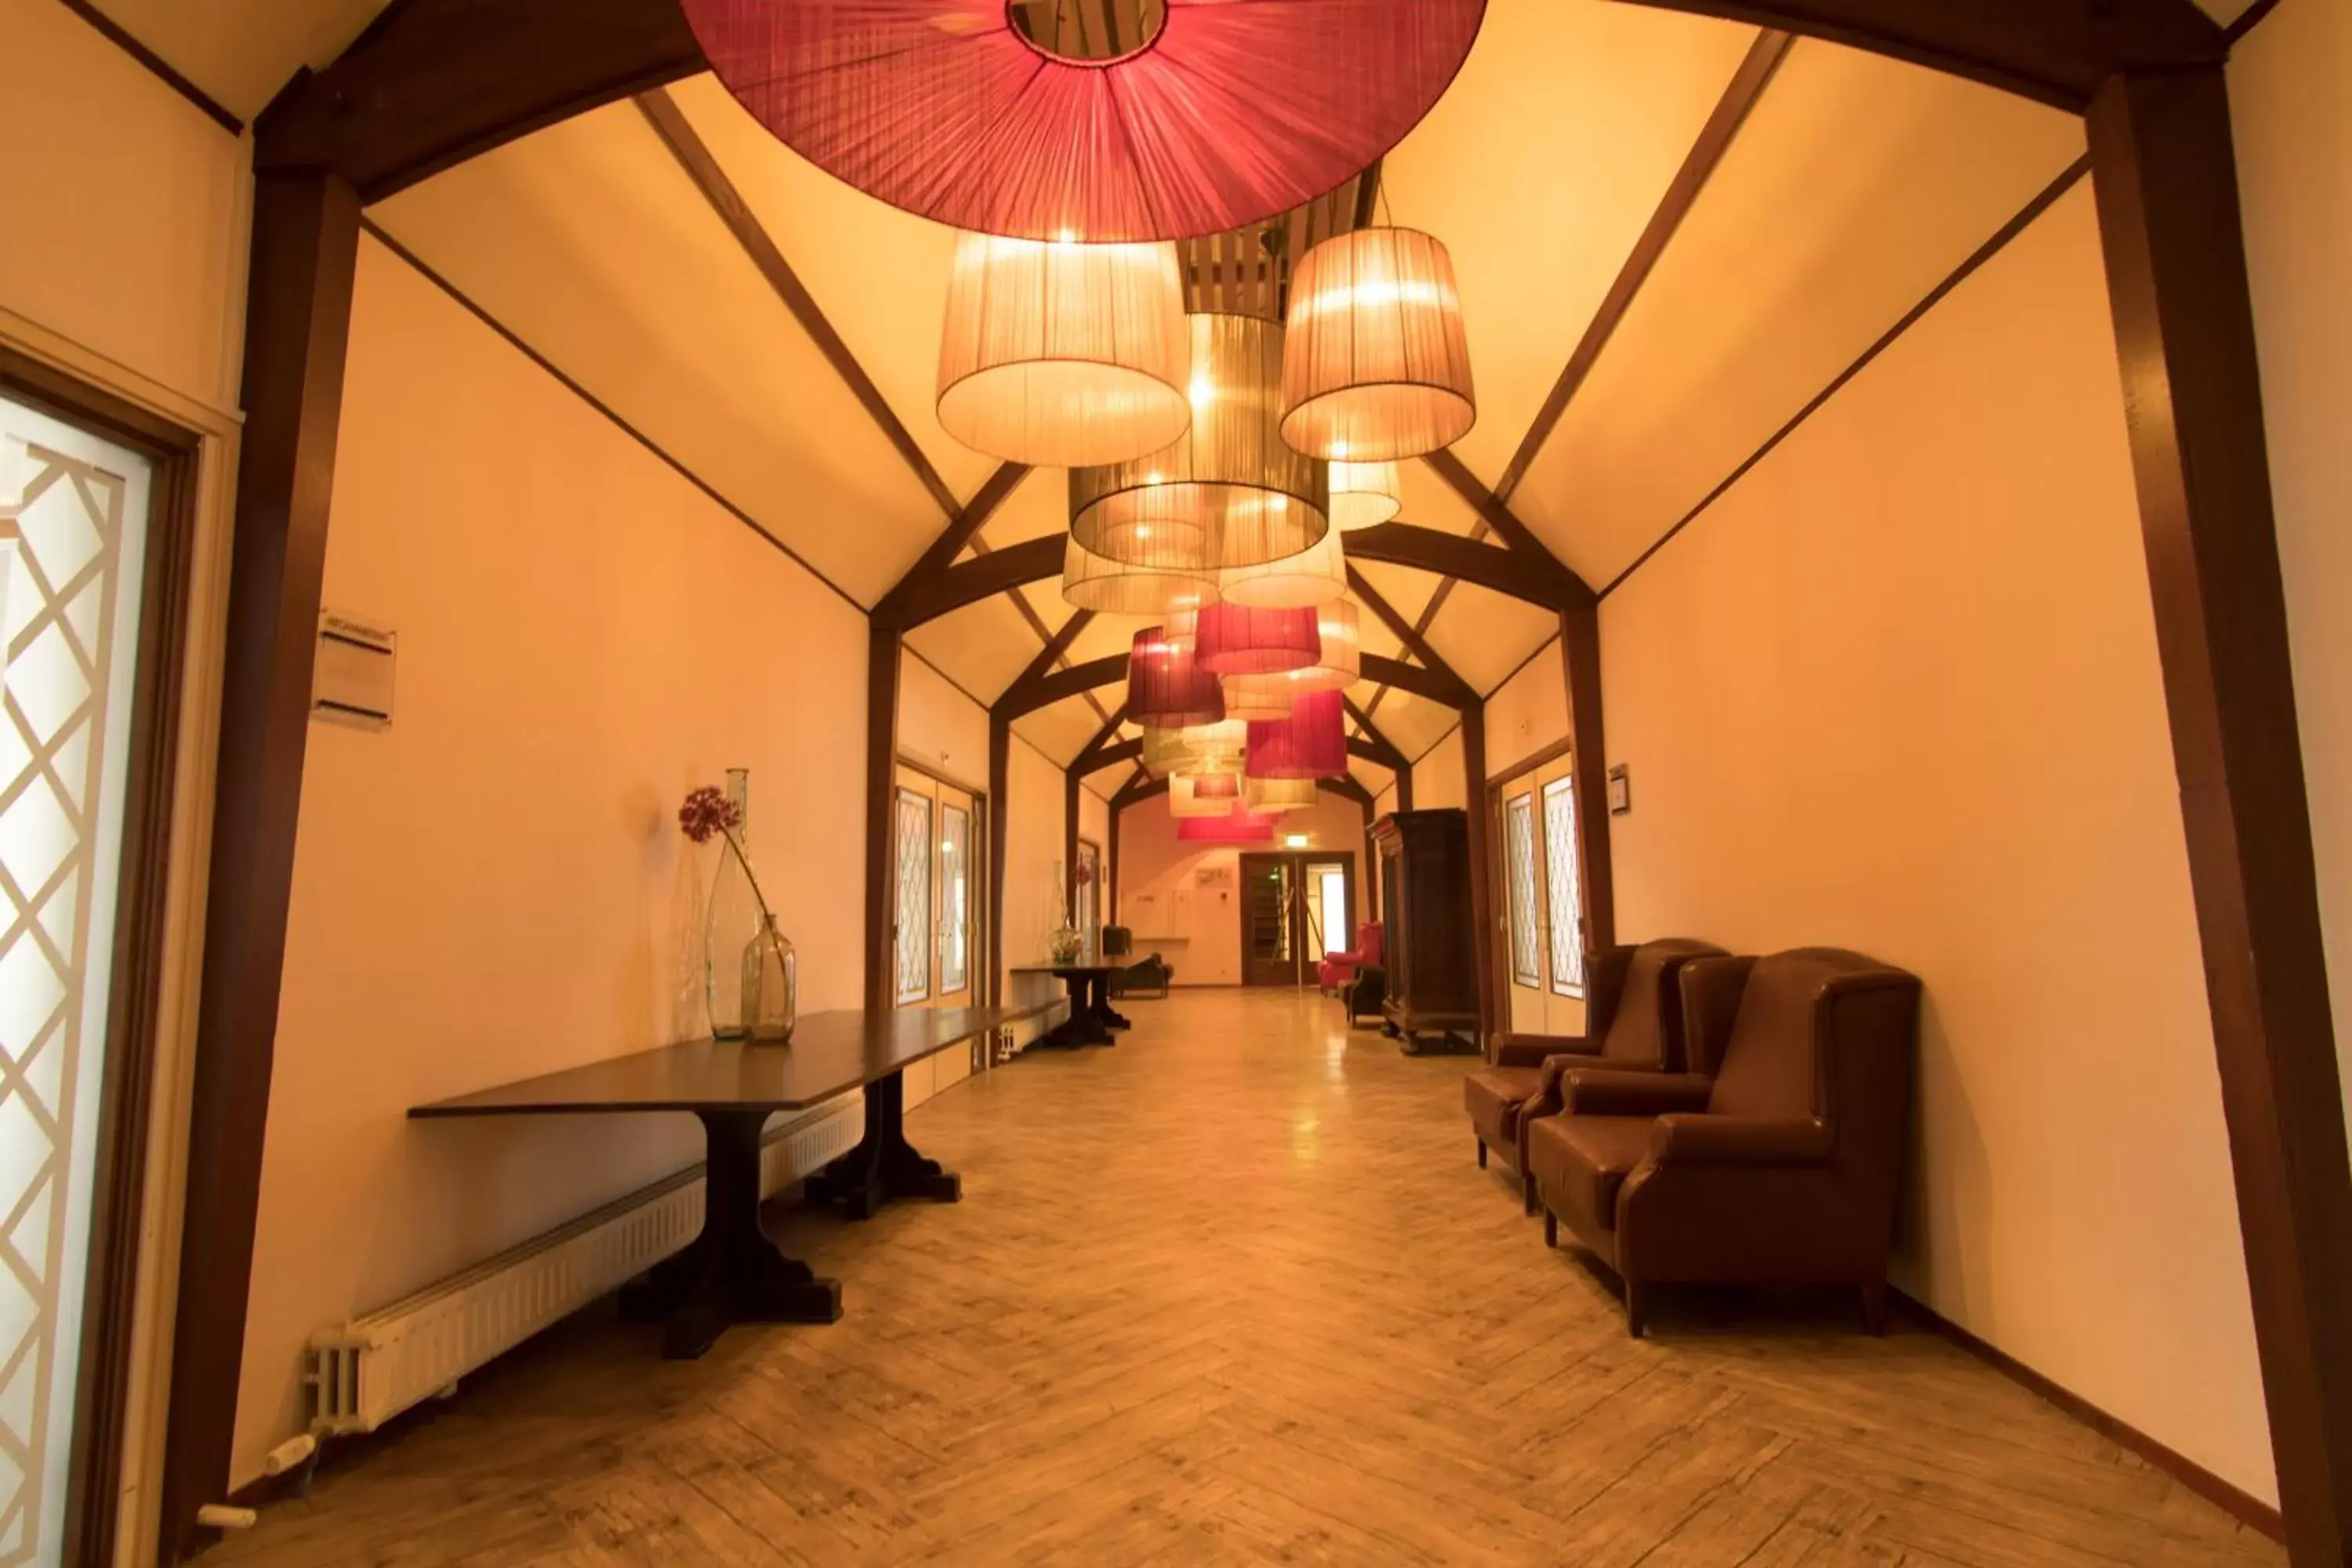 Seating area, Lobby/Reception in Van der Valk Hotel Hilversum/ De Witte Bergen